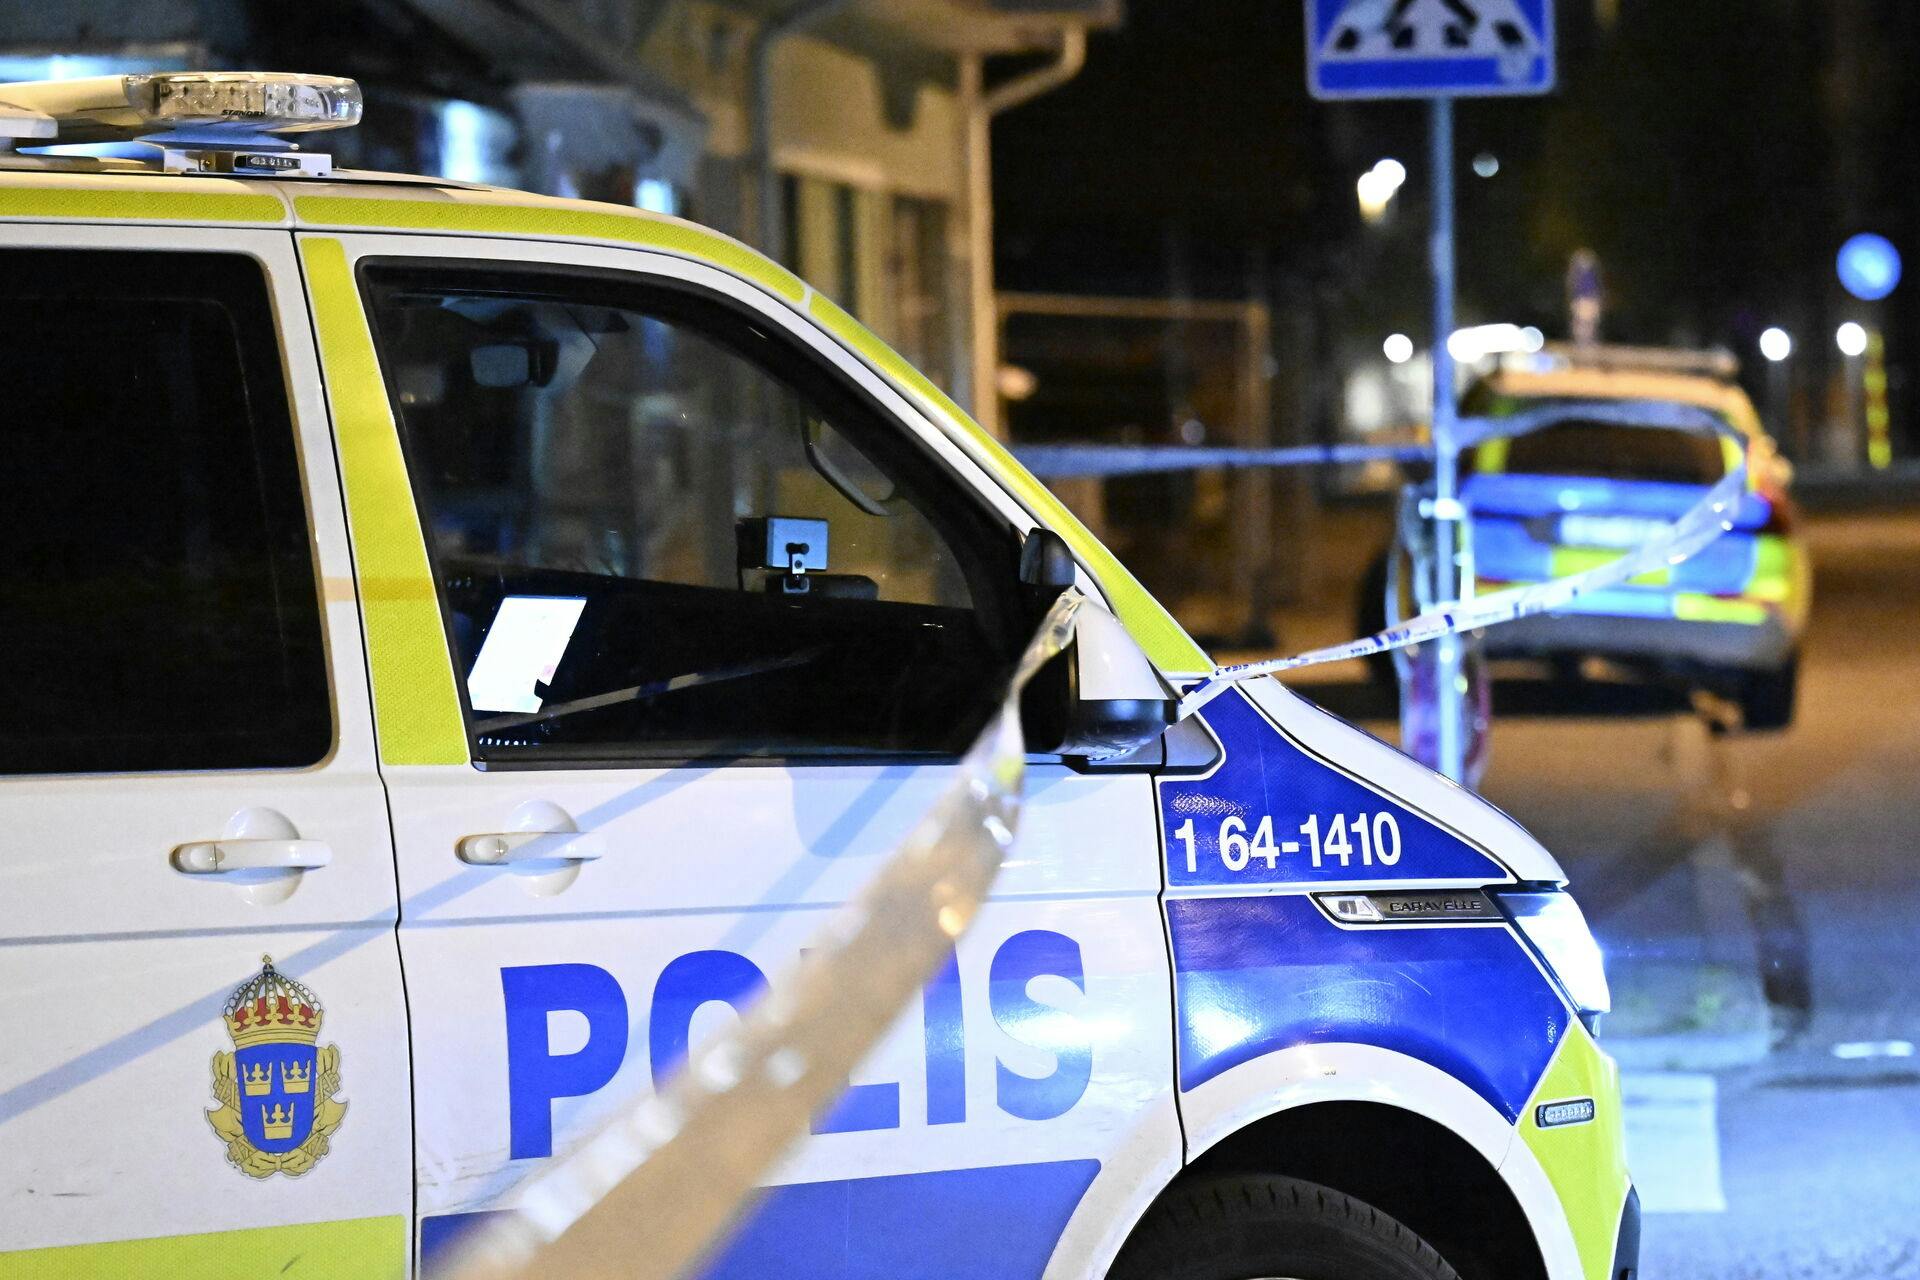 Svensk politi har tirsdag anholdt 15-20 mennesker på mistanke om, at de er involveret i grov kriminalitet. Politiet har beslaglagt våben, narkotika, mobiltelefoner og en stor mængde kontanter. (Arkivfoto)